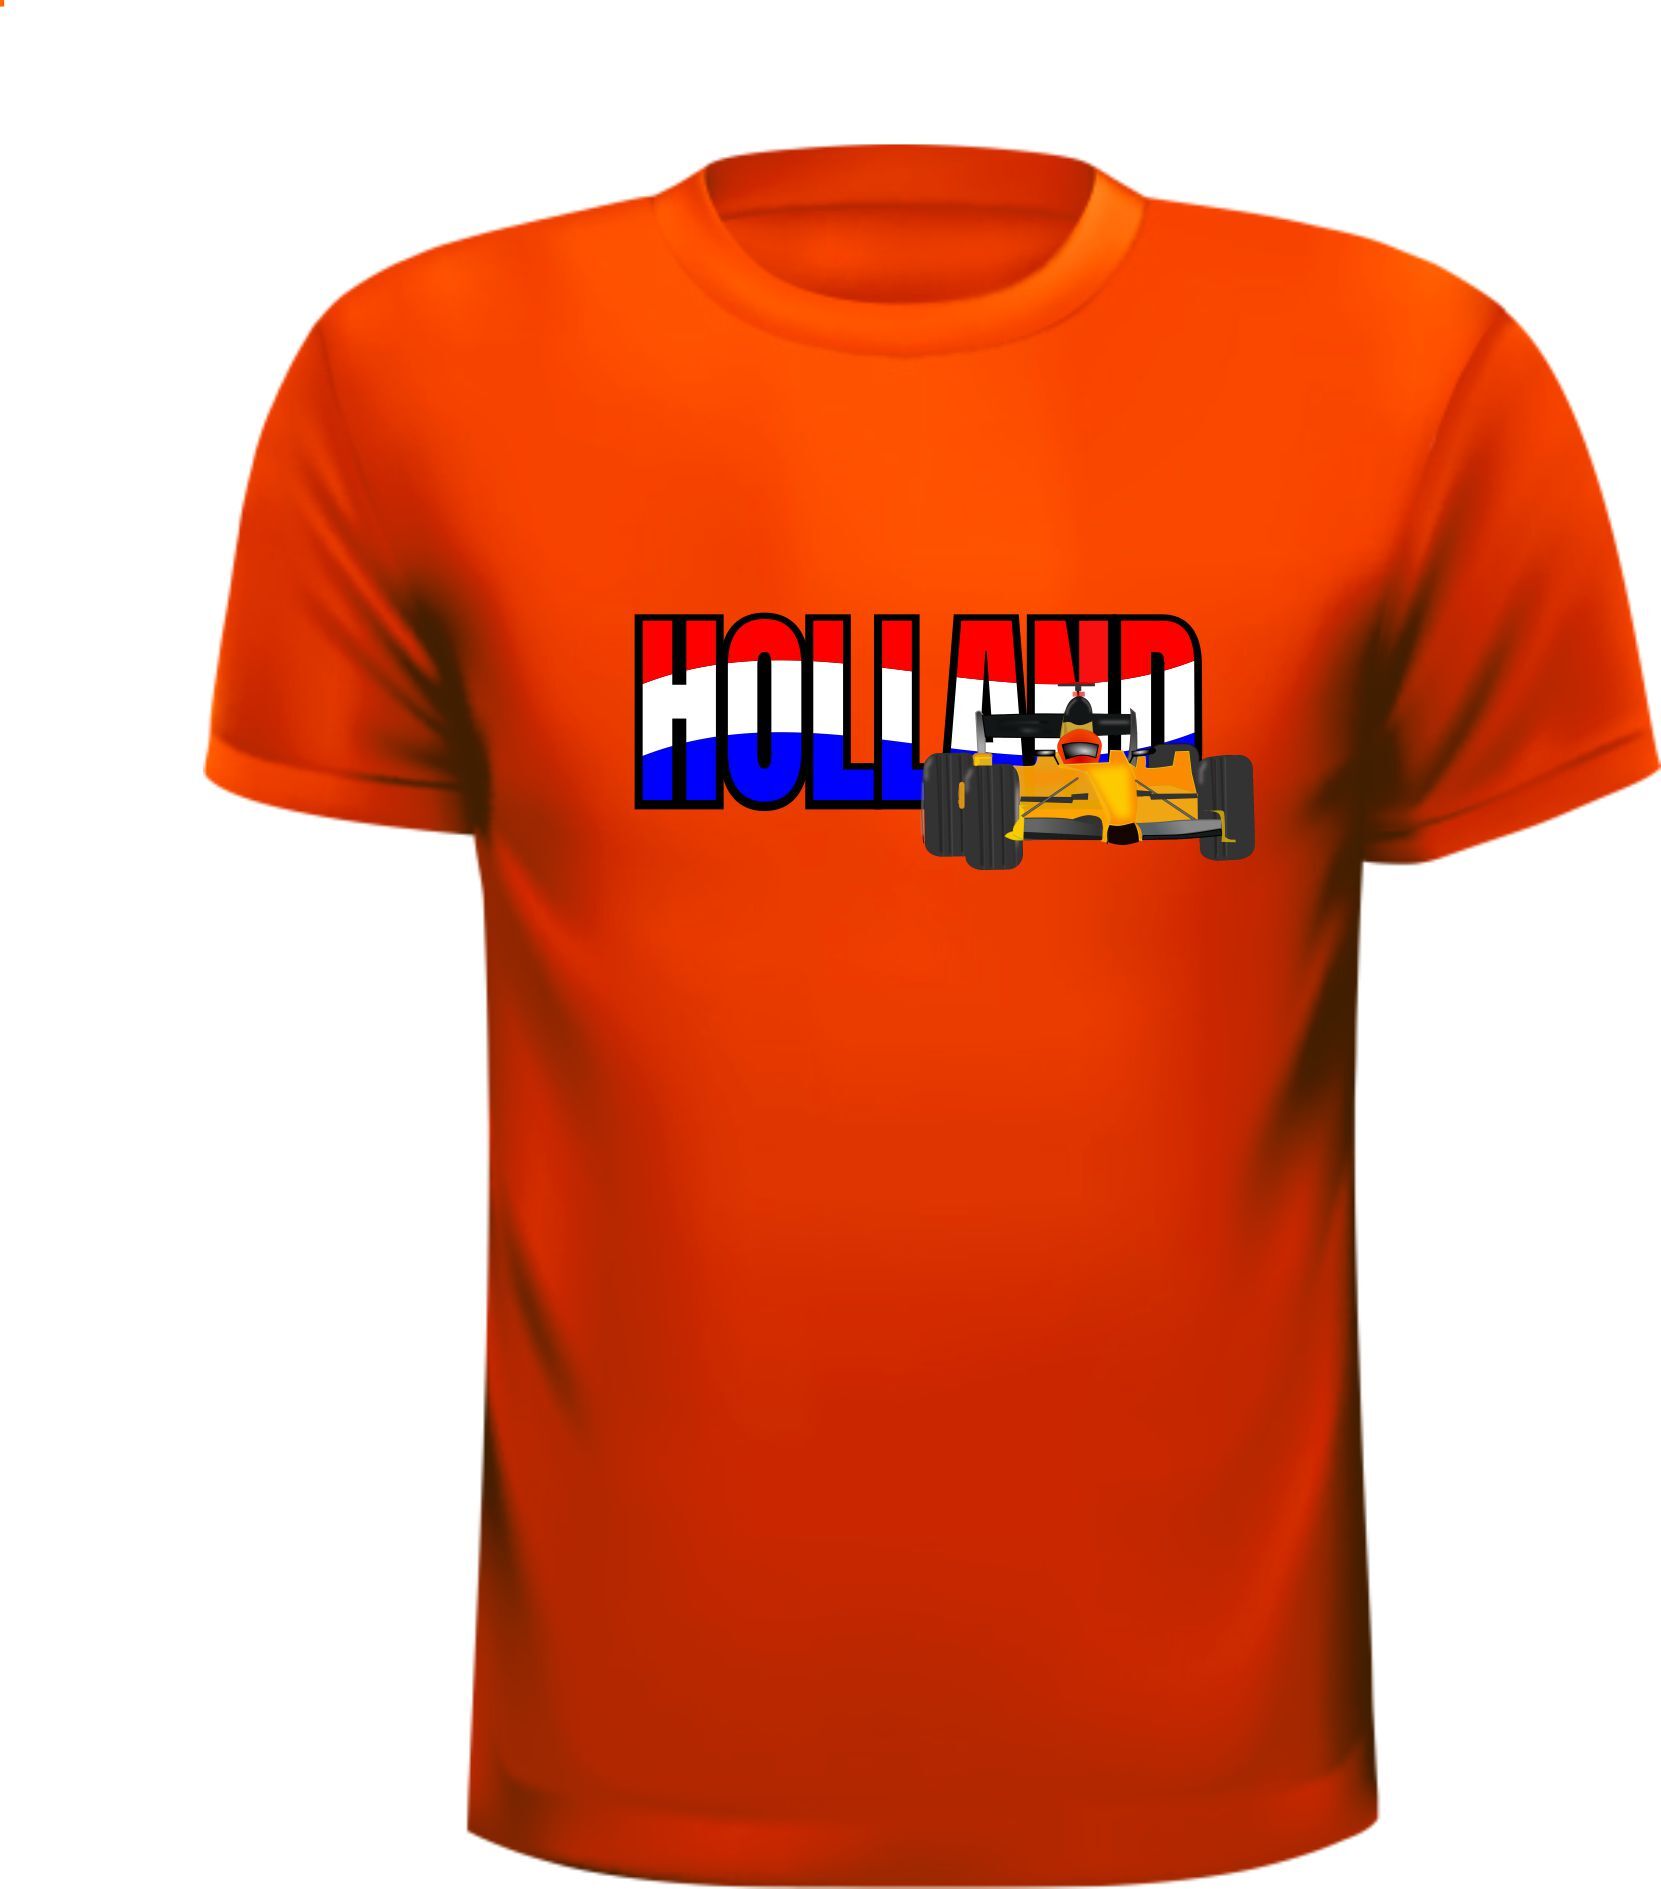 Oranje T-shirt opdruk Holland in de Nederlandse vlag met race auto